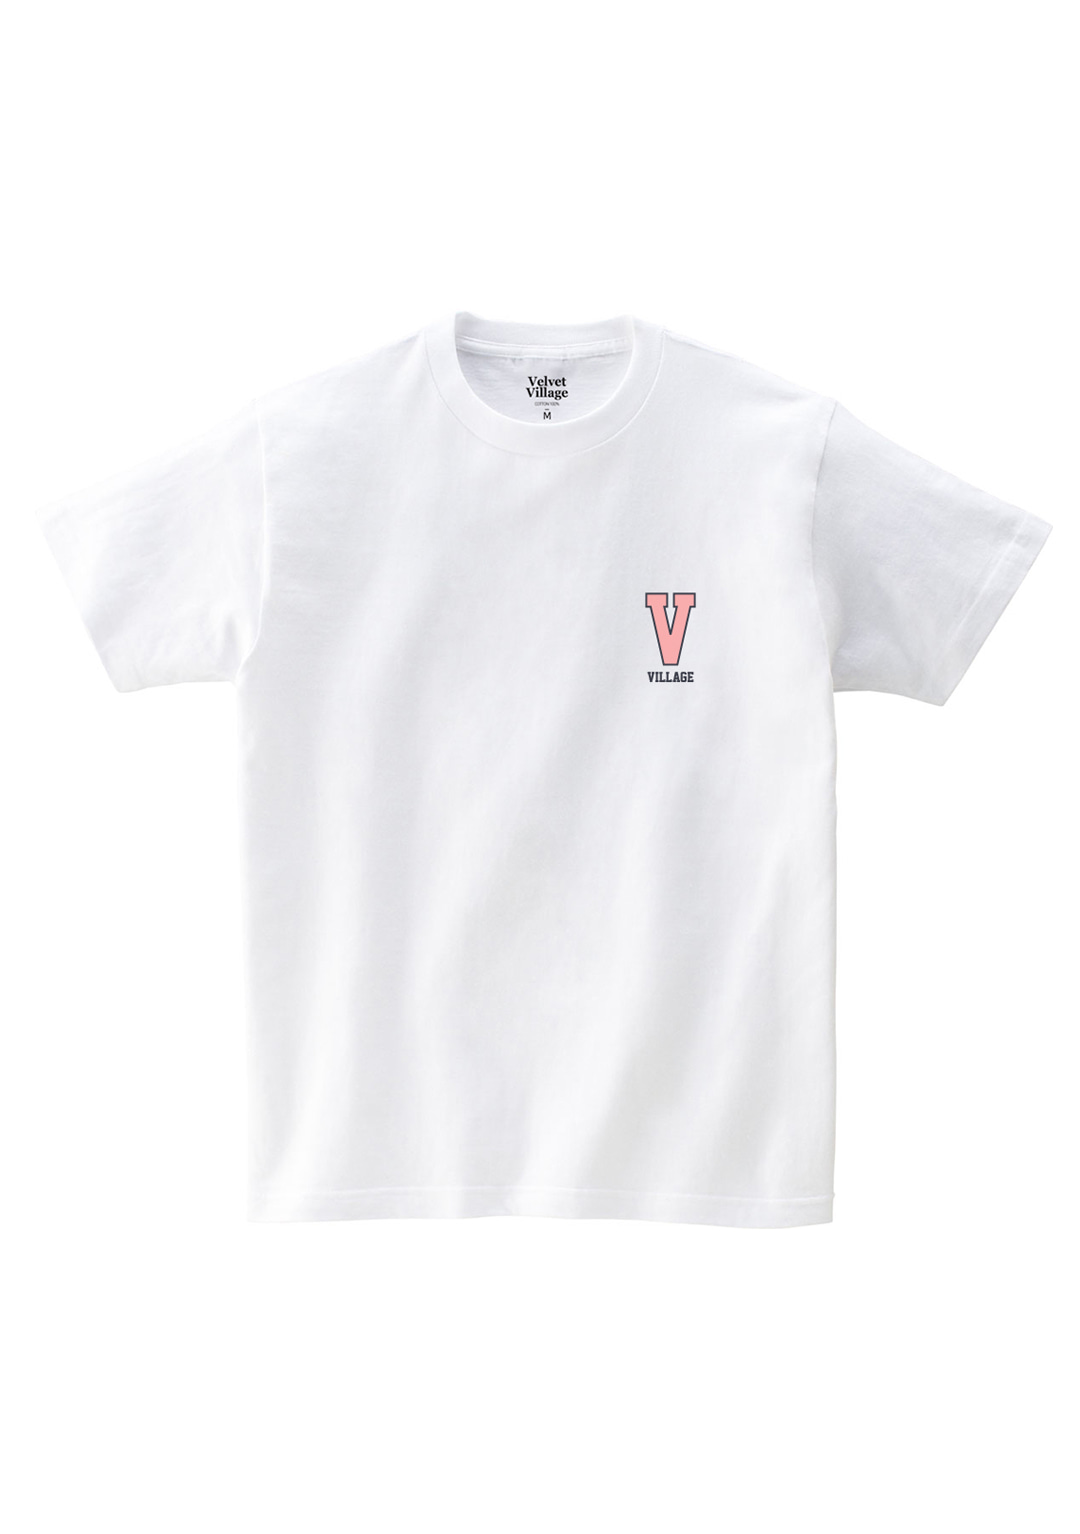 V-village T-shirts (White)